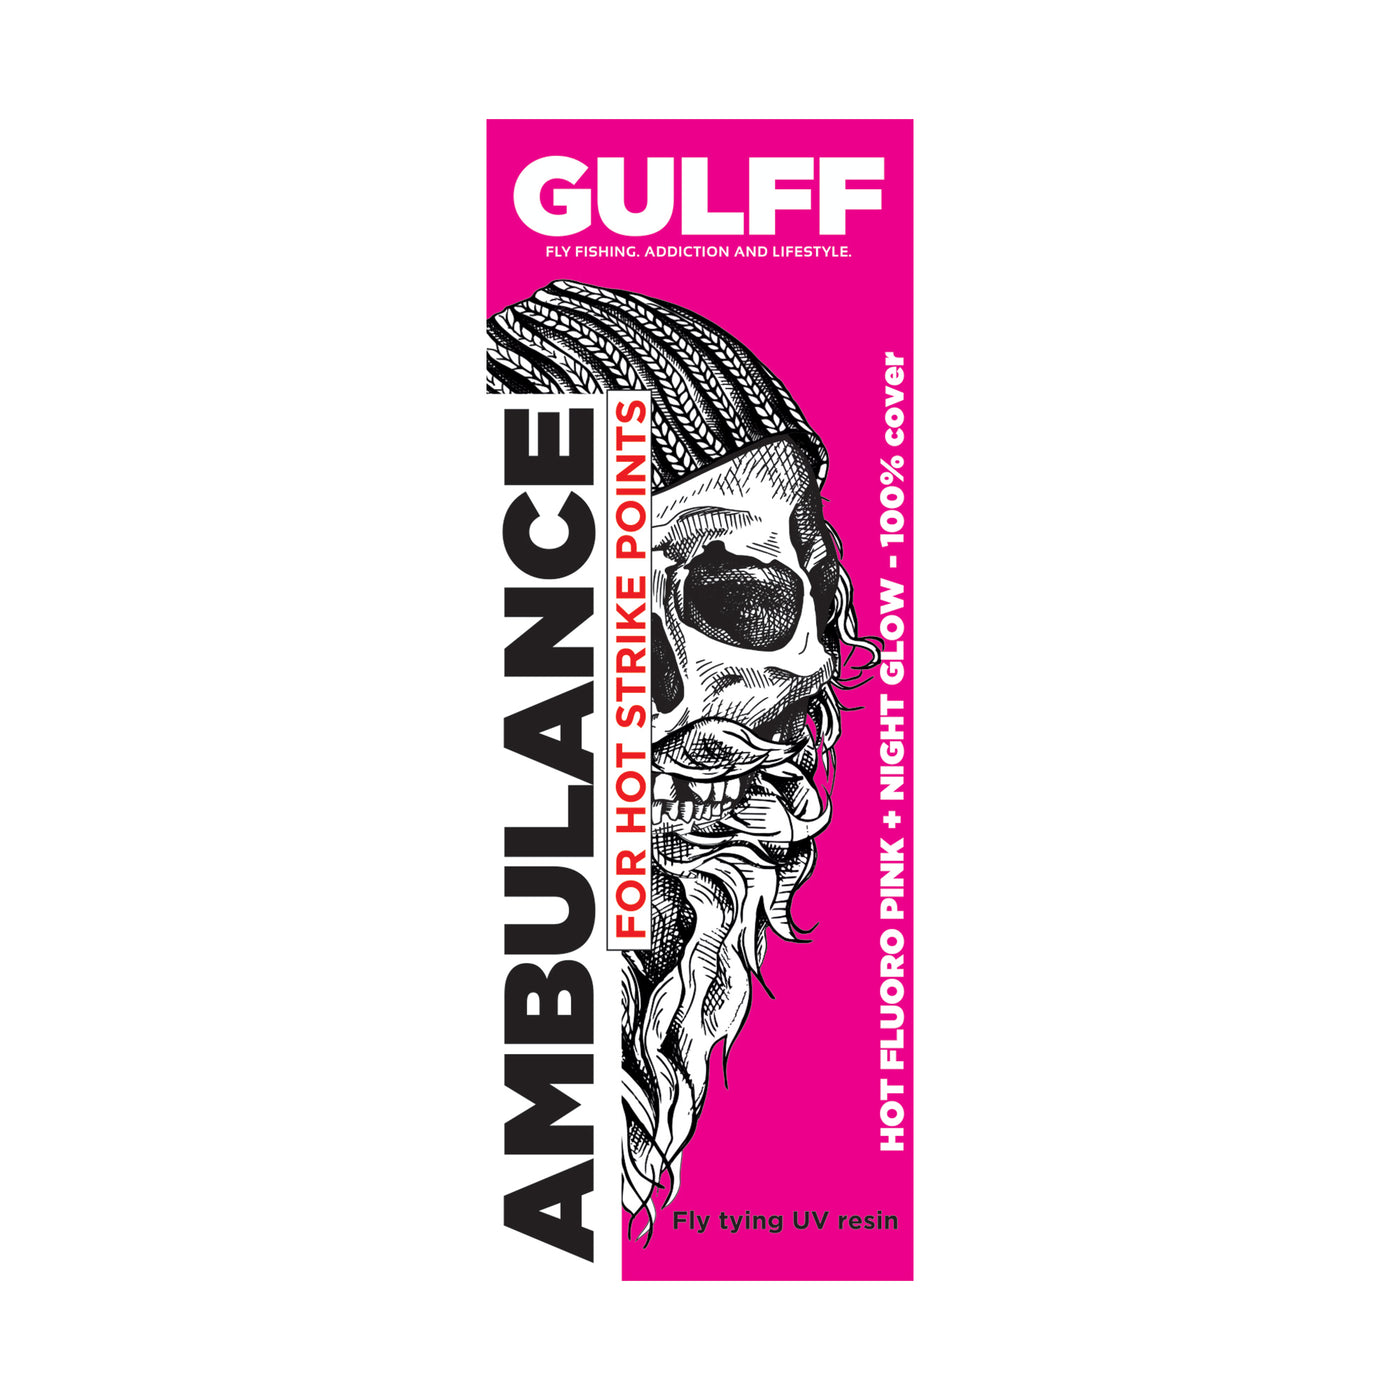 Gulff Ambulance UV Resin